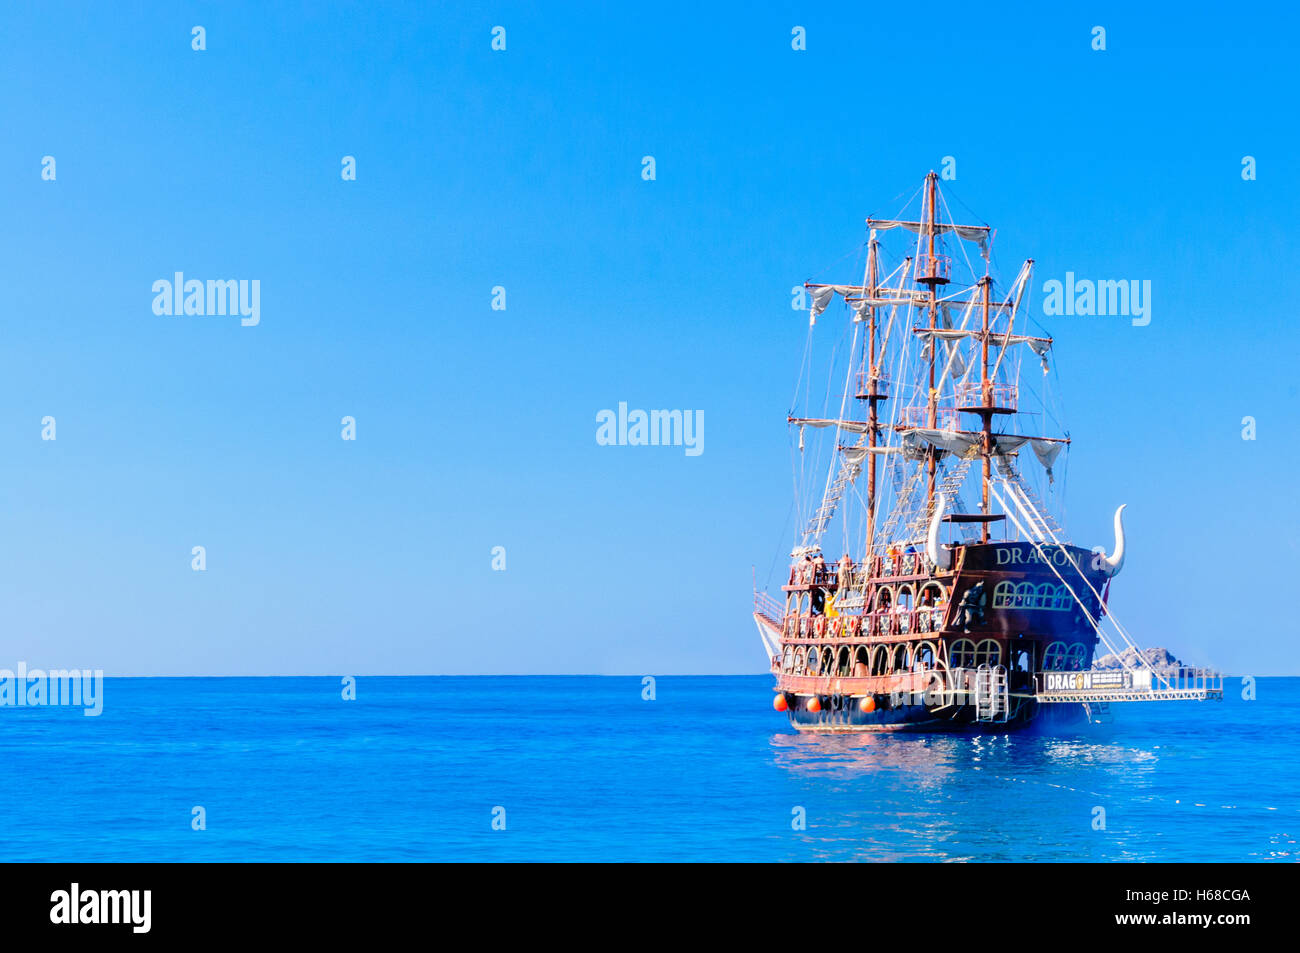 'Dragon' conçu pour ressembler à un bateau de pirate commence une tournée pour les touristes autour de la baie de Fethiye. Banque D'Images